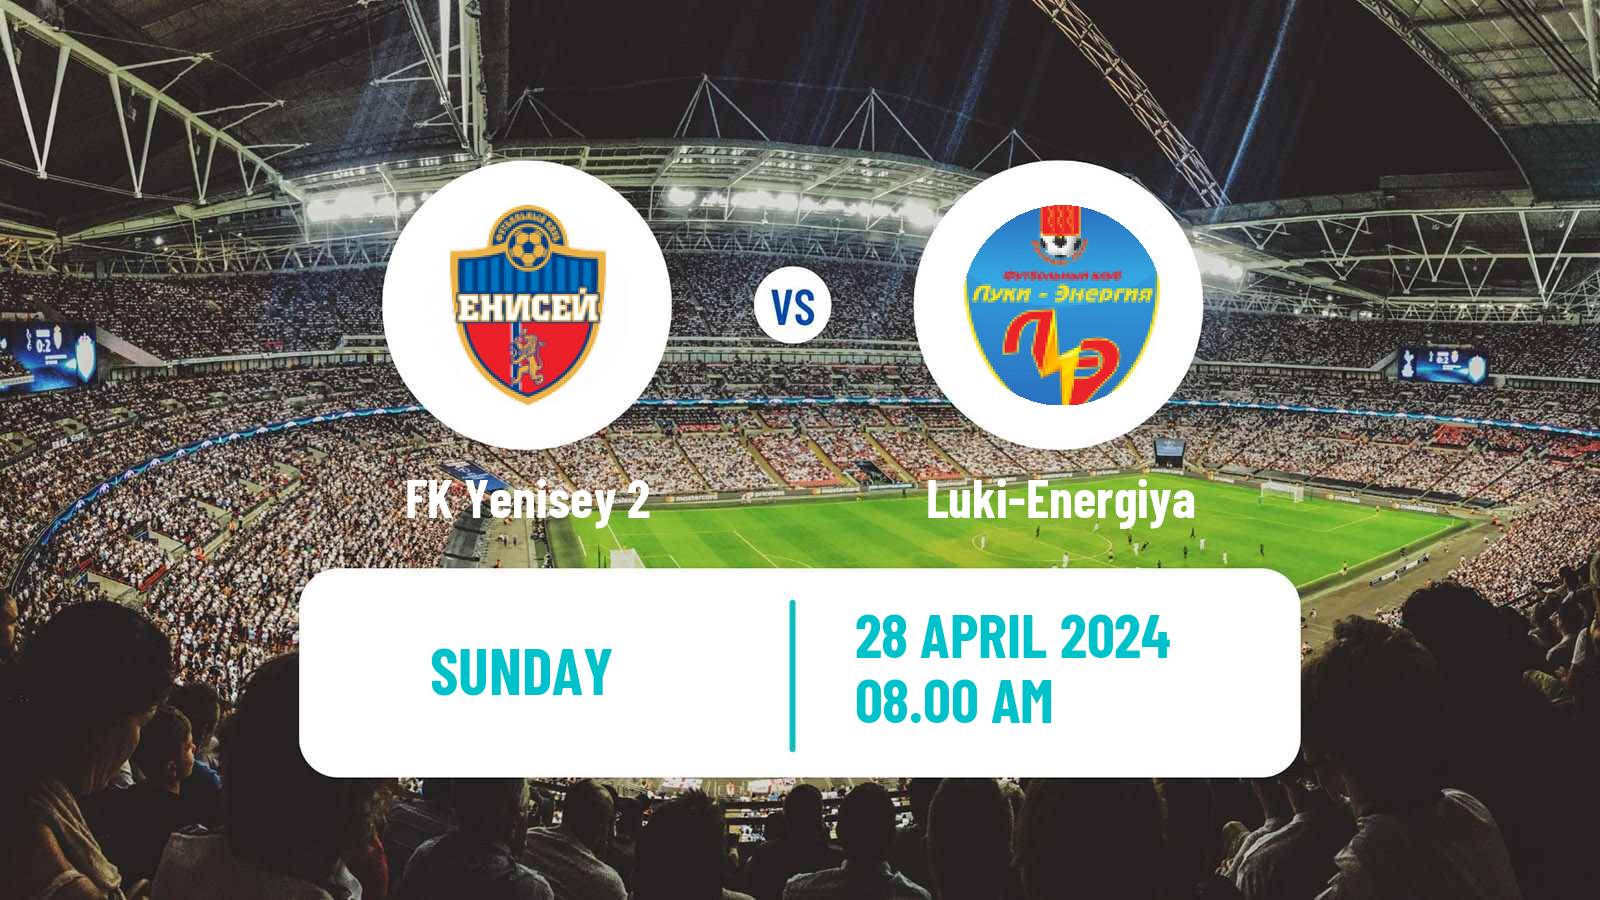 Soccer FNL 2 Division B Group 2 Yenisey 2 - Luki-Energiya